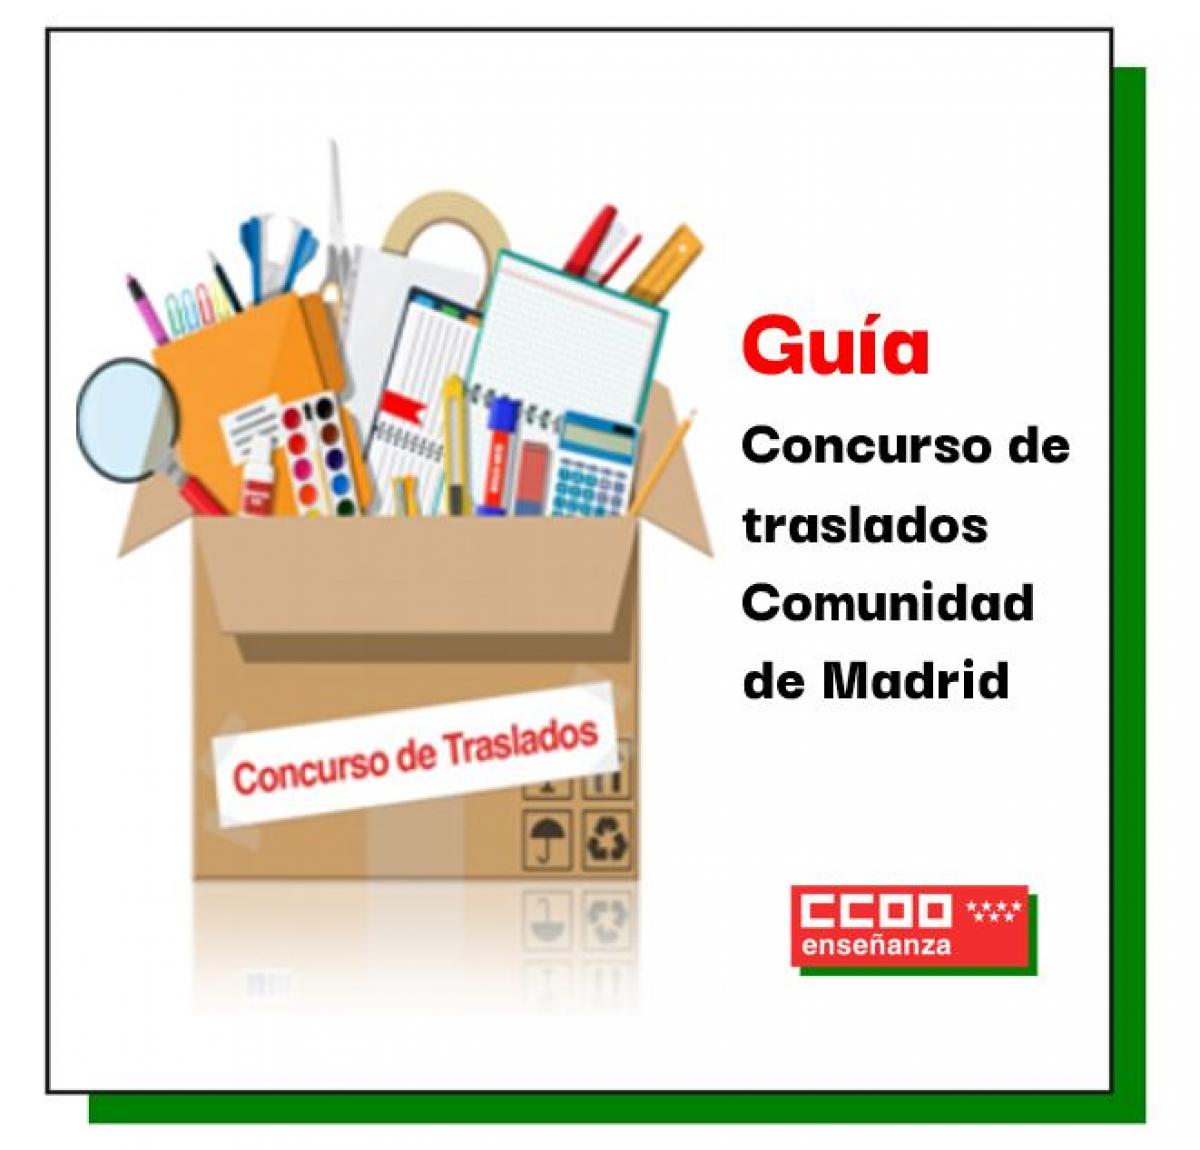 Guía Concurso de traslados Comunidad de Madrid